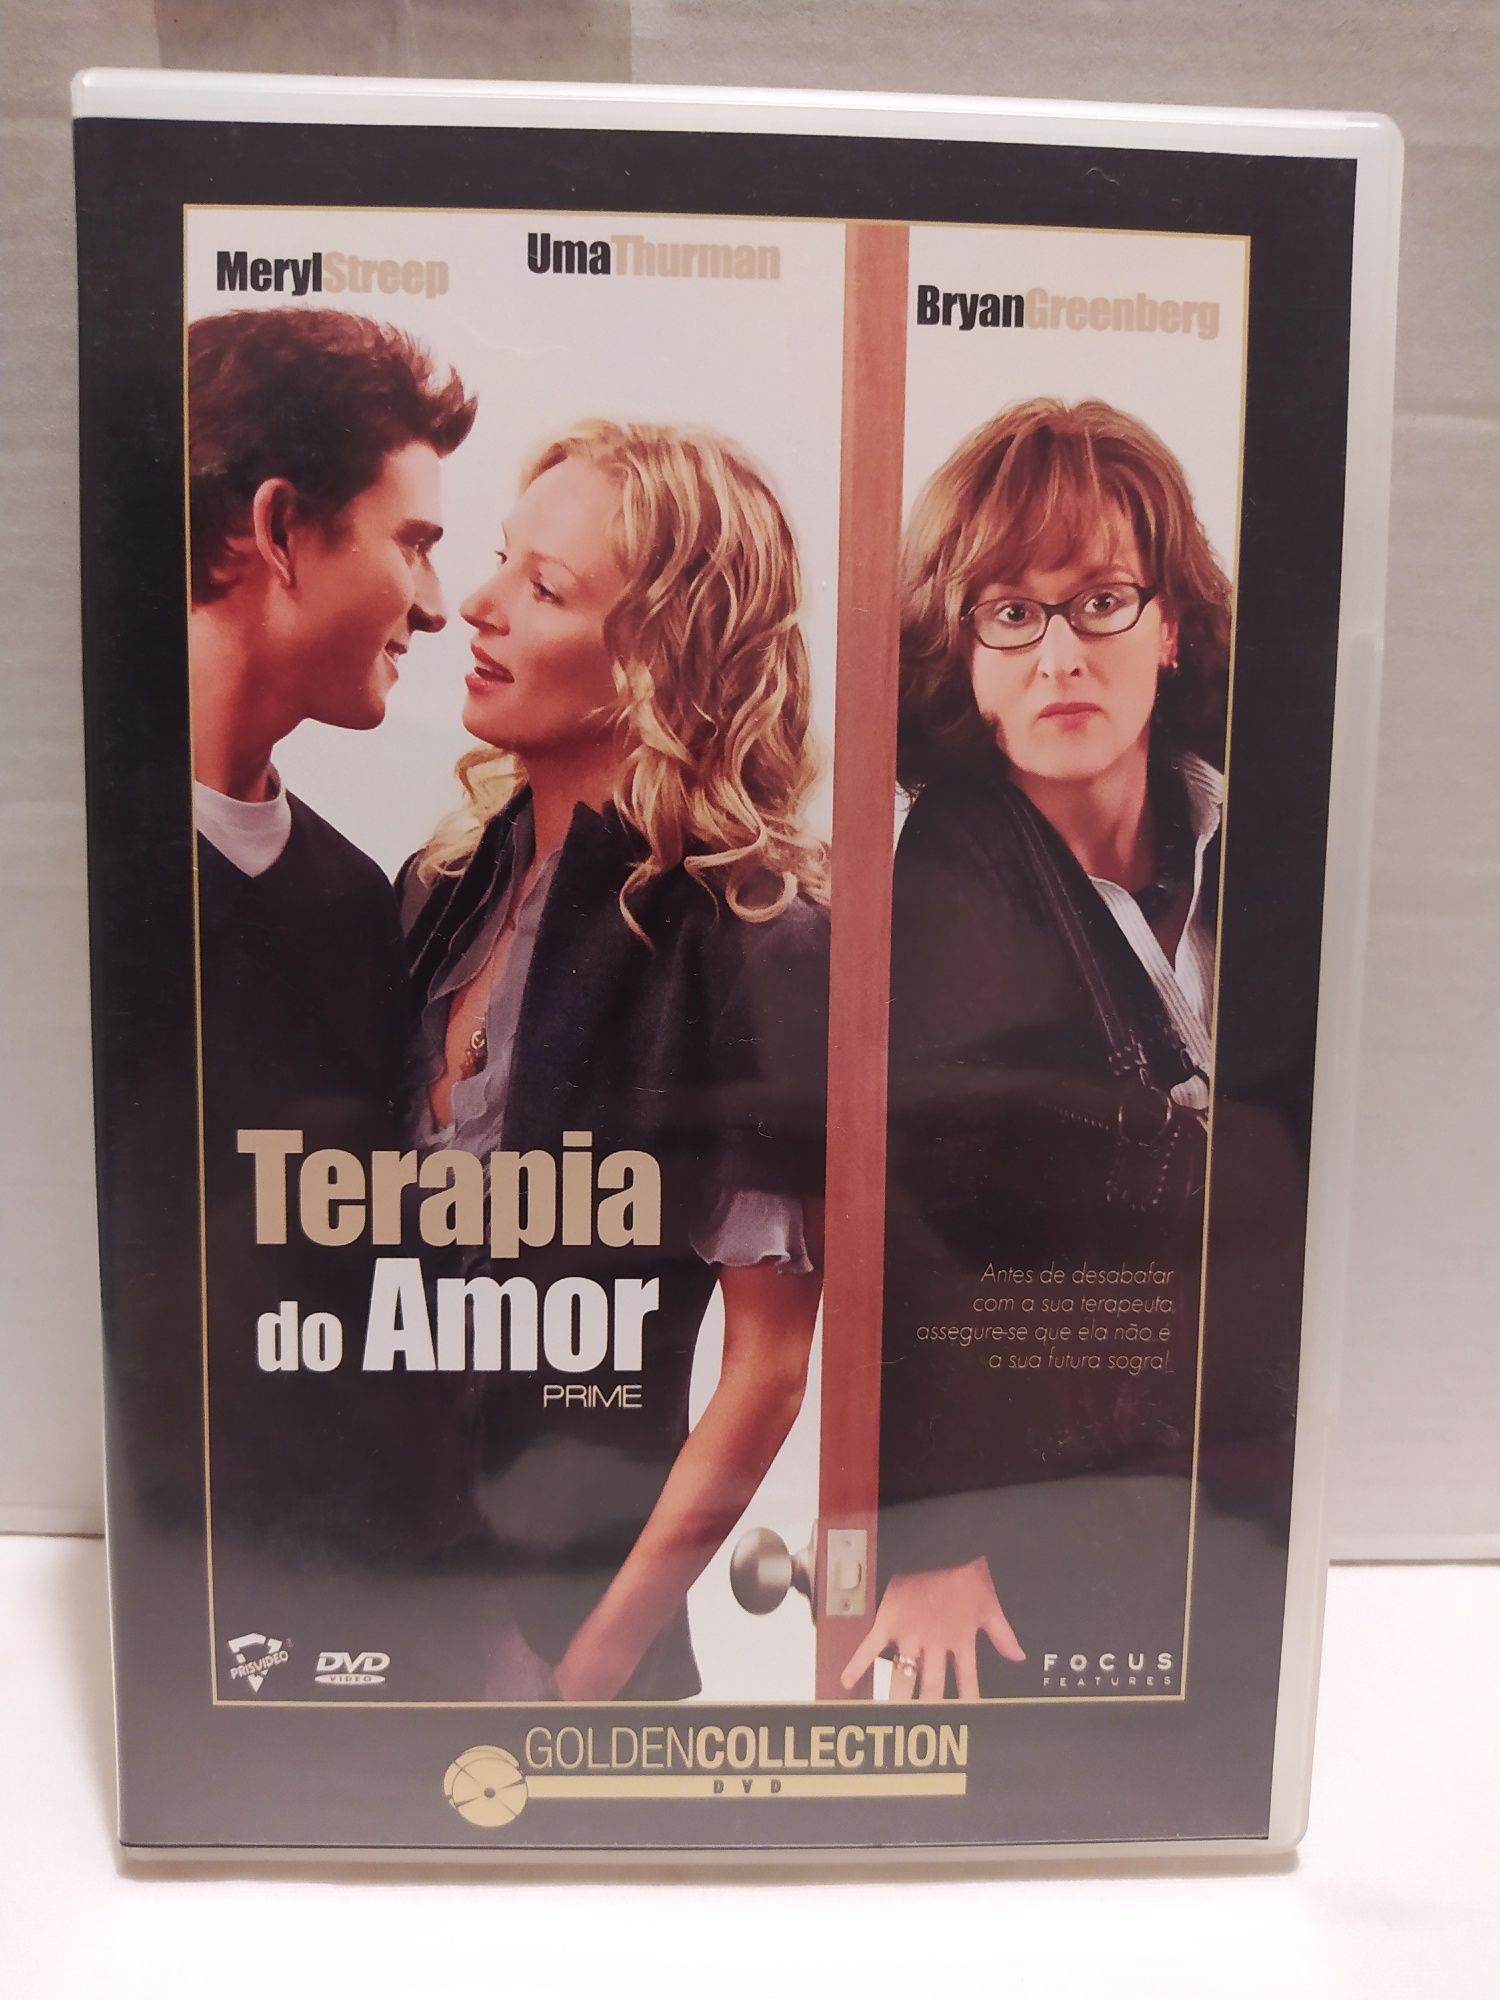 Terapia do Amor. DVD. Trailer